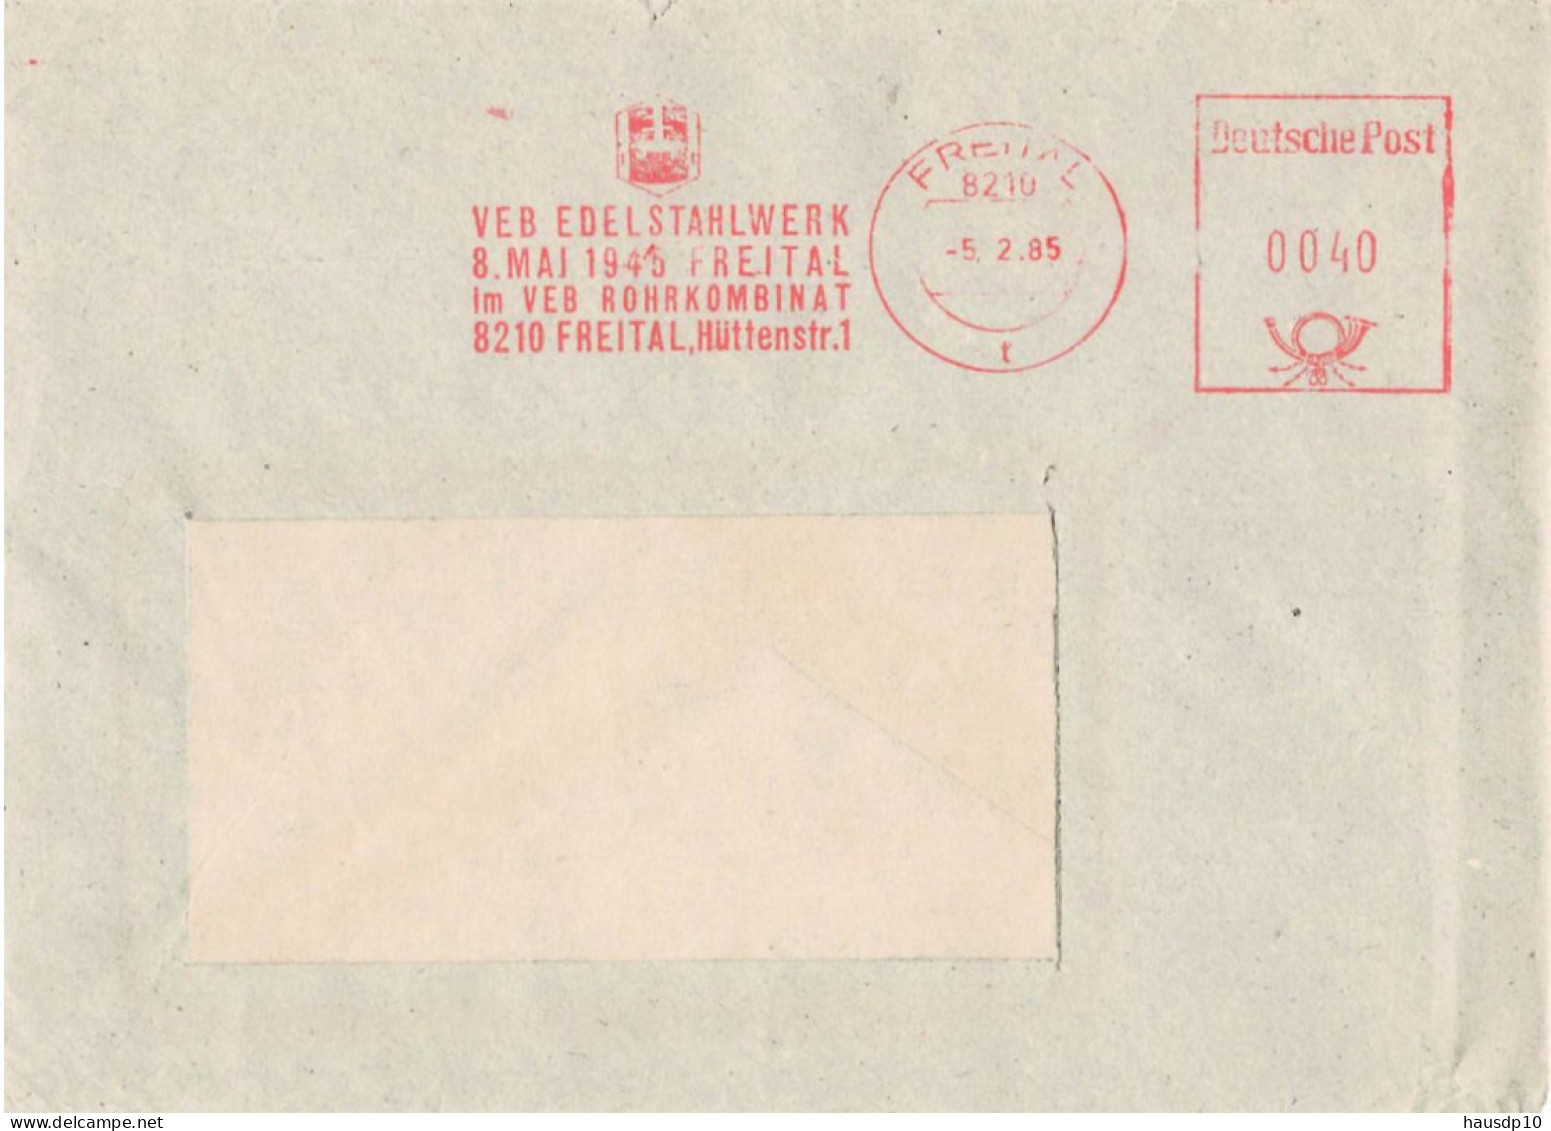 DDR Brief VEB Edelstahlwerk 8.Mai 1945 Freital VEB Rohkombinat 1985 - Maschinenstempel (EMA)